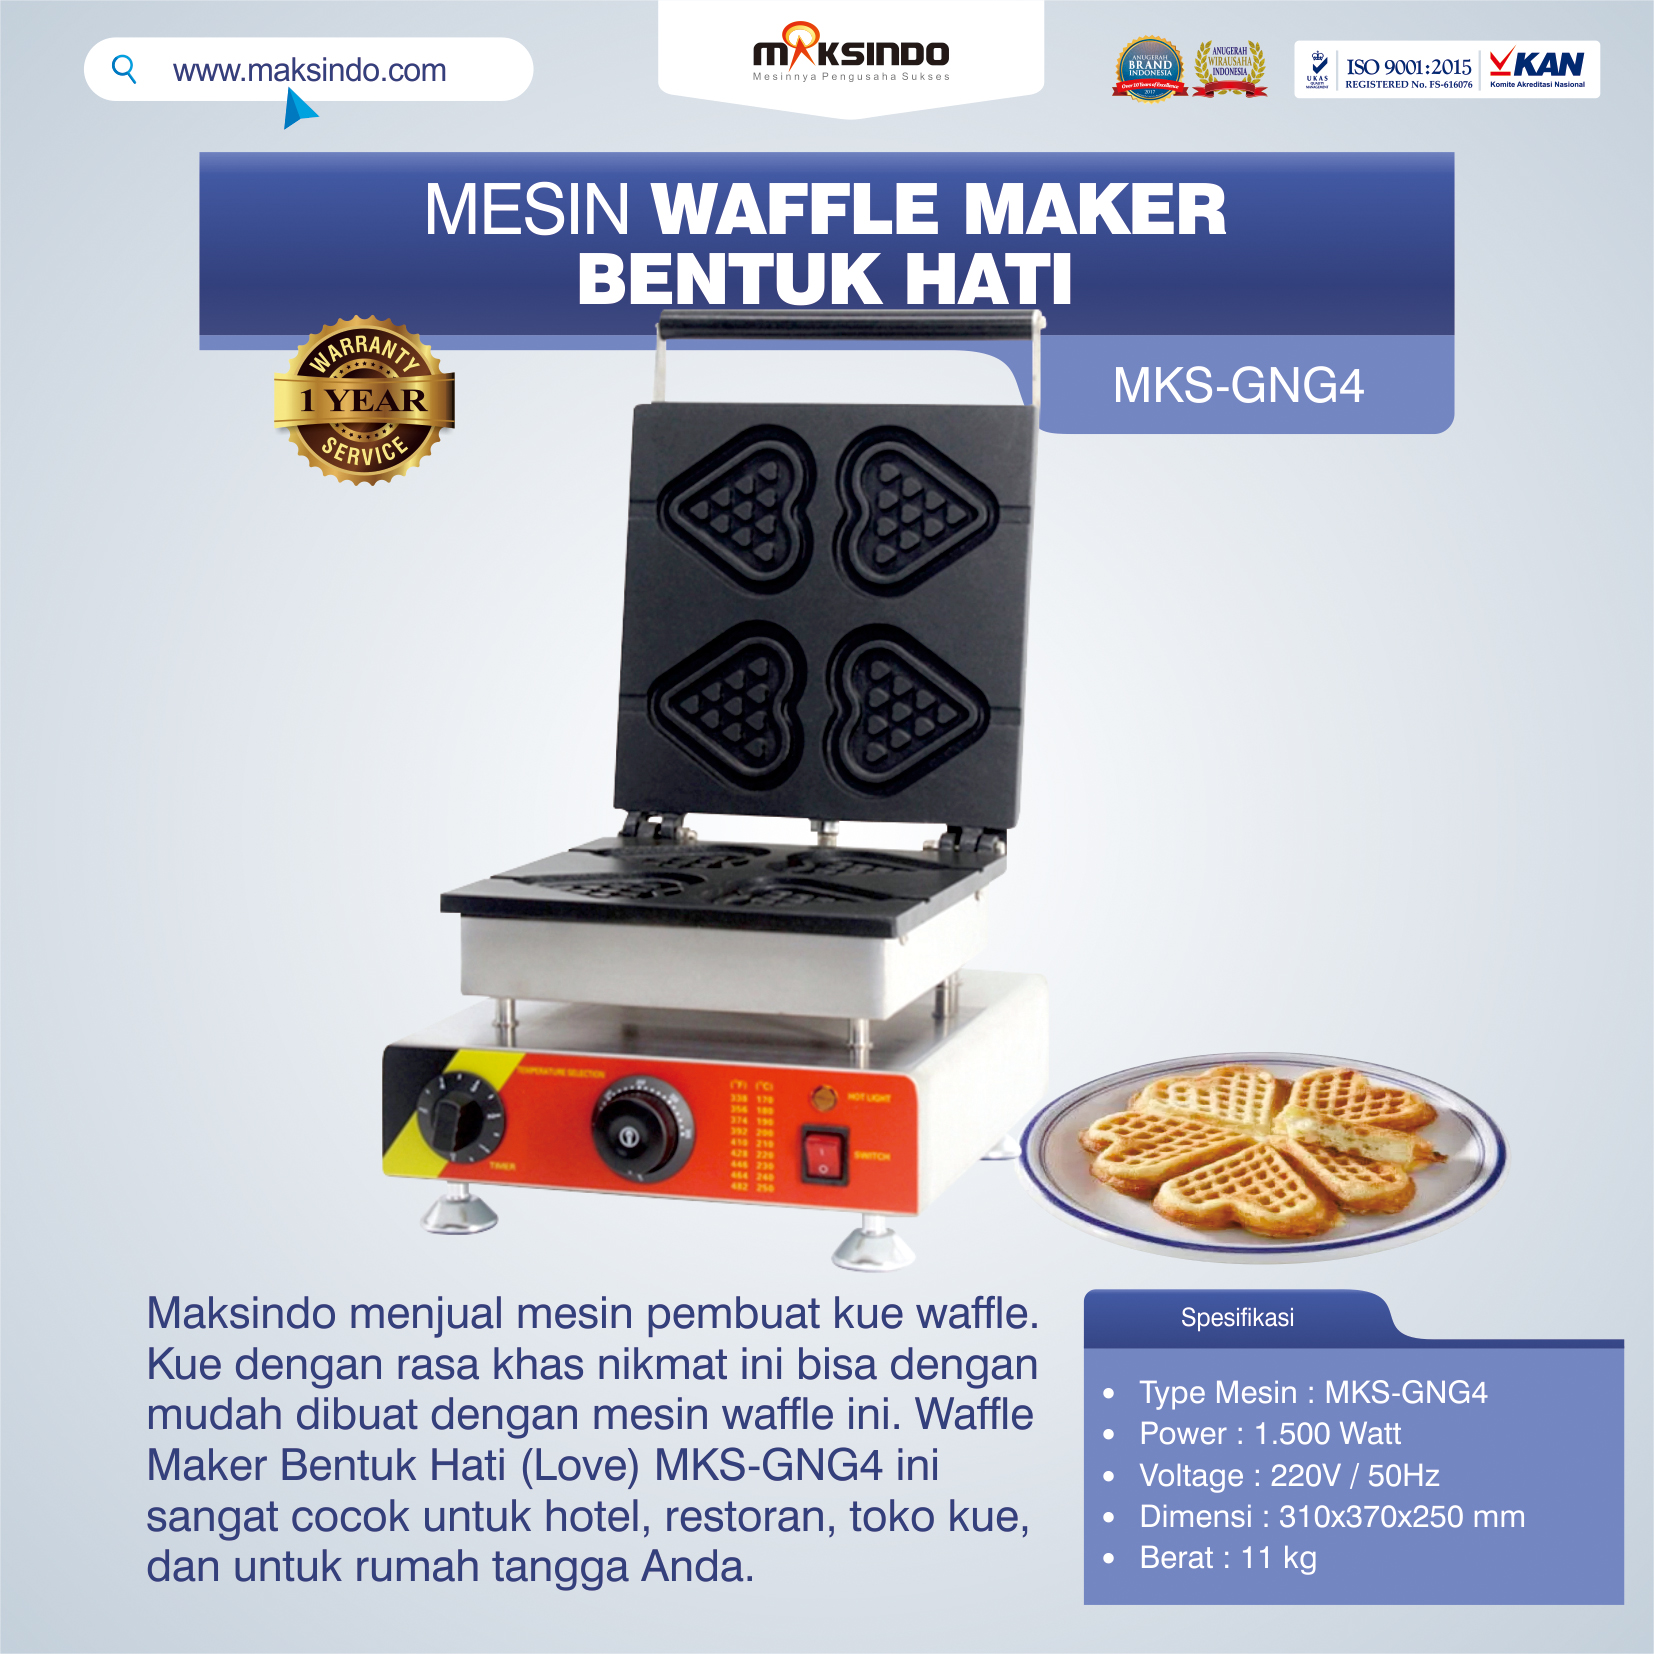 Jual Mesin Waffle Maker Bentuk Hati (Love) MKS-GNG4 di Semarang